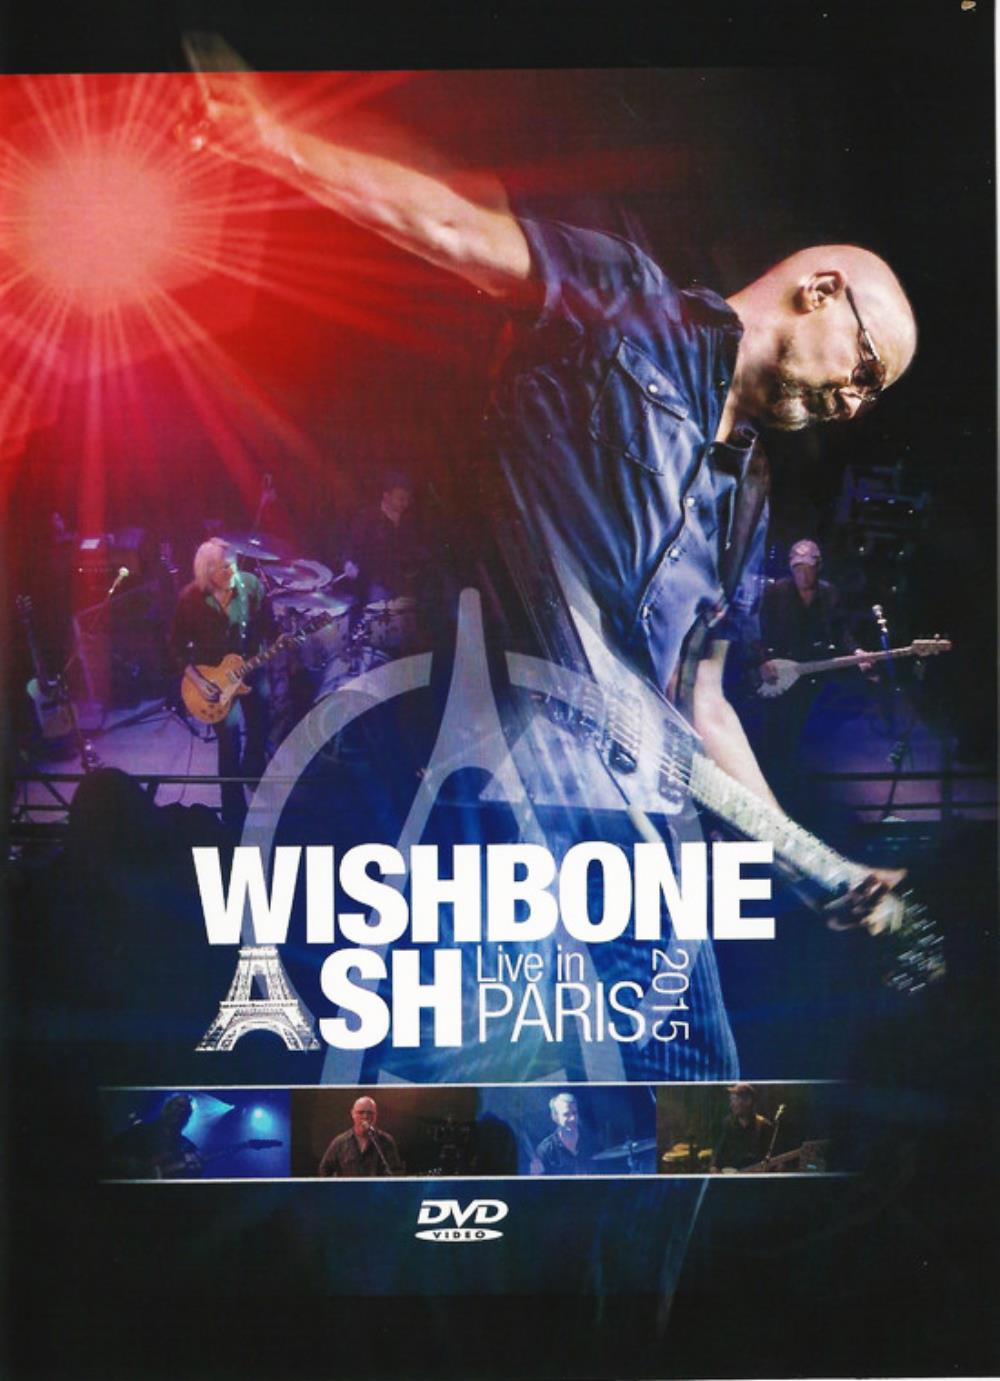 Wishbone Ash Live in Paris 2015 album cover